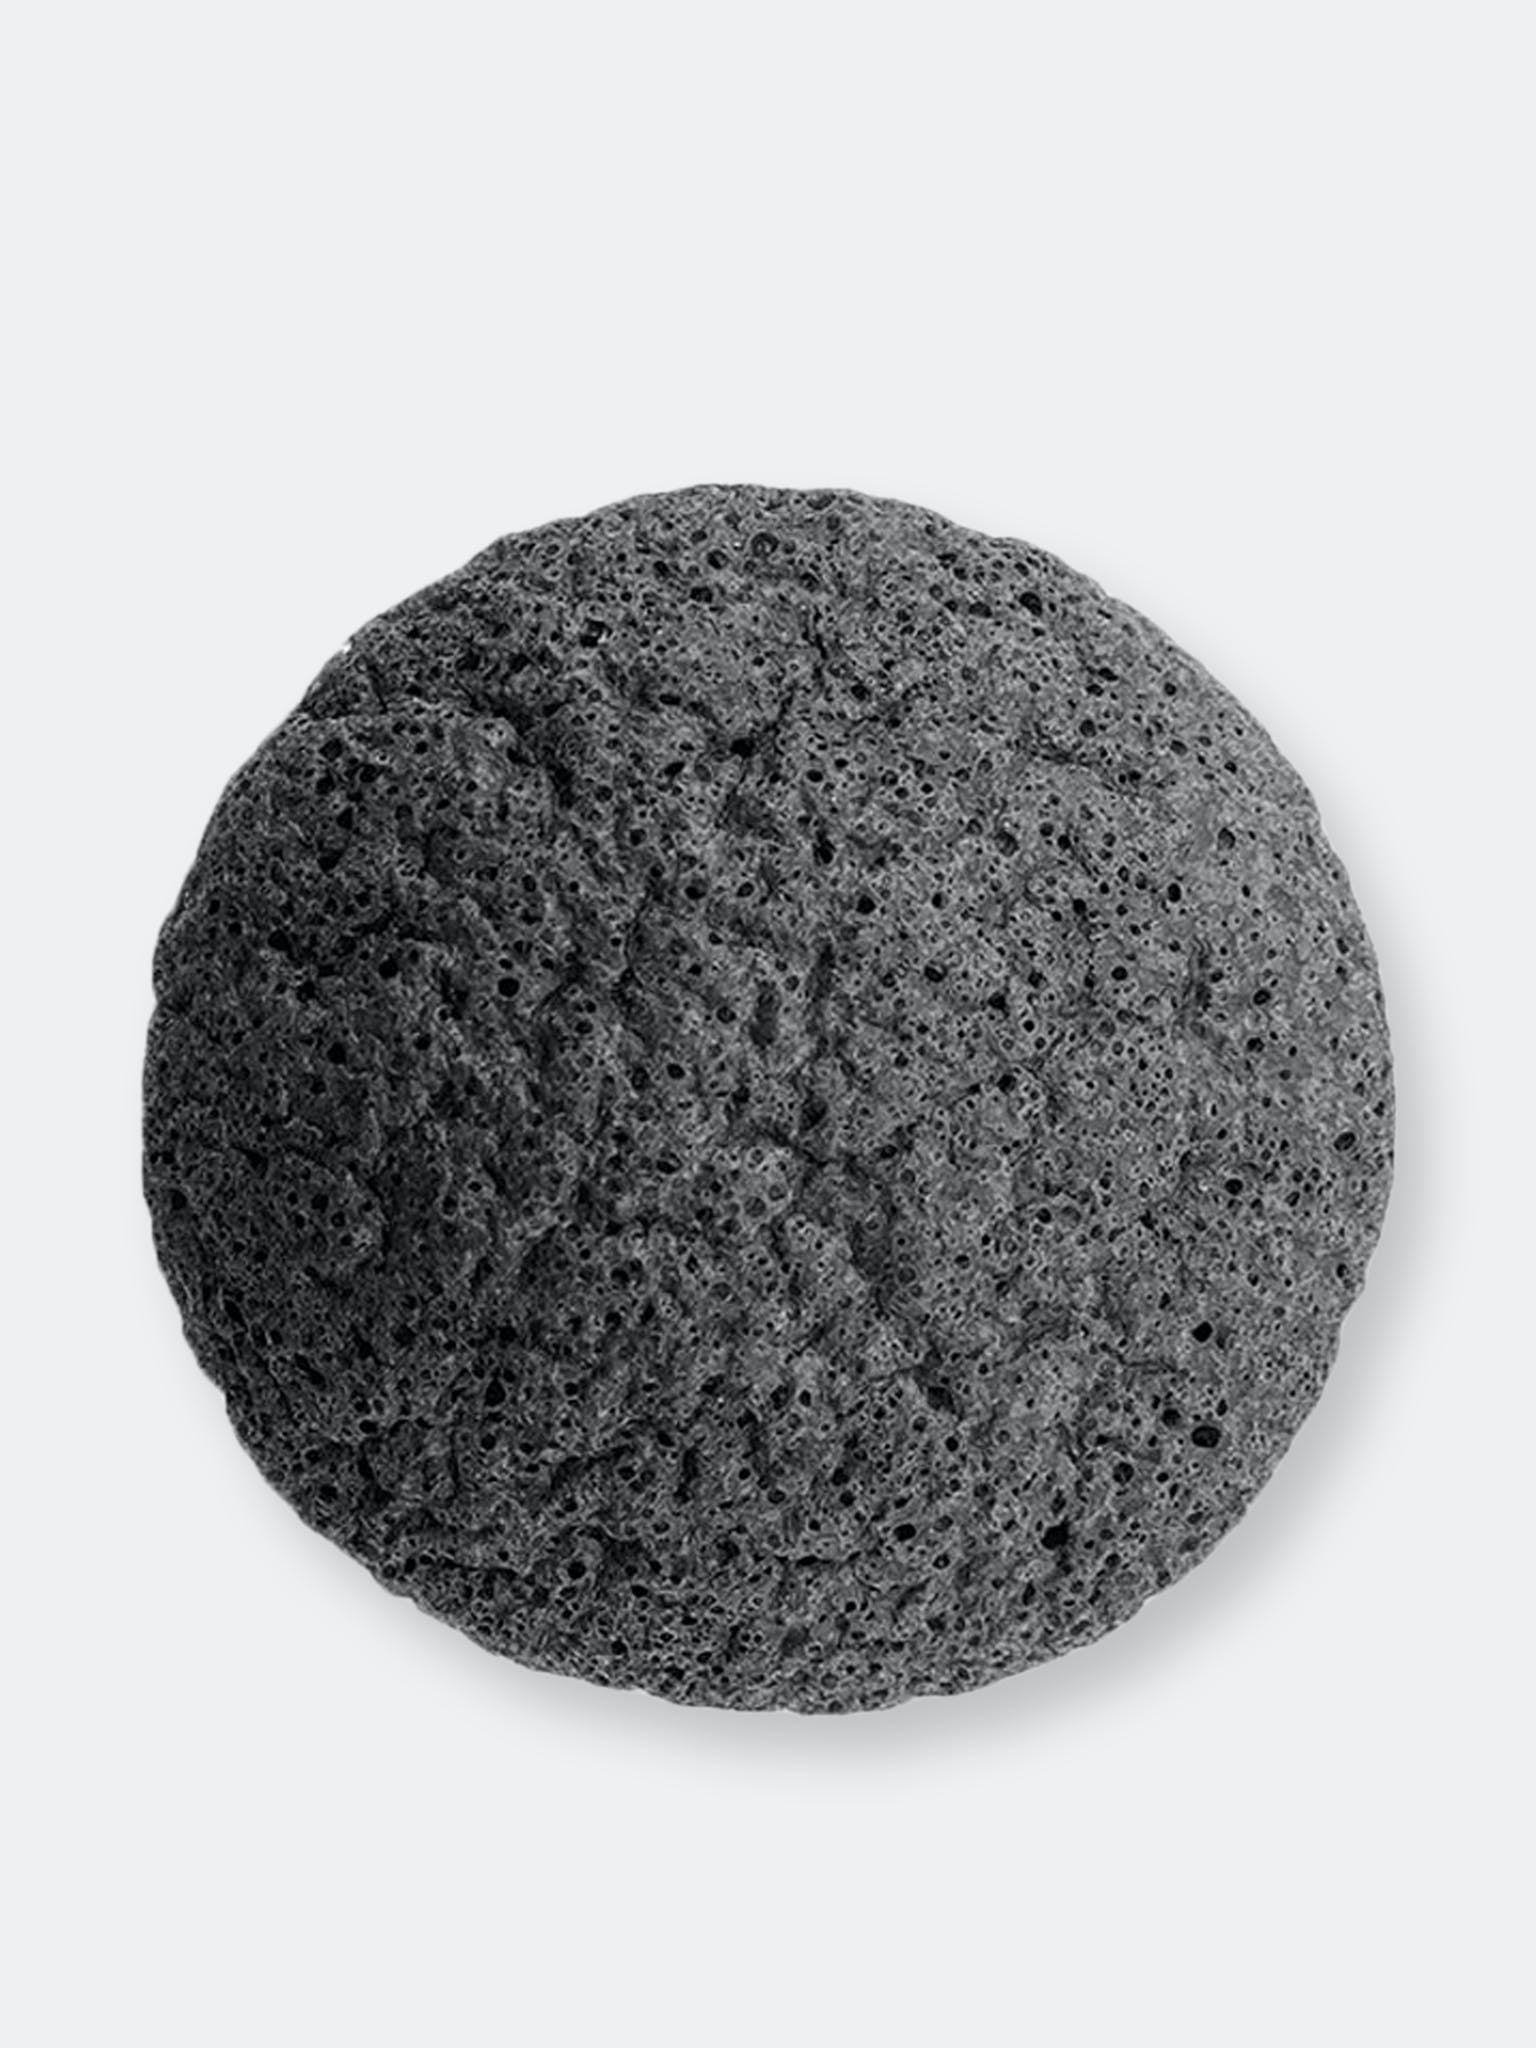 a charcoal sponge